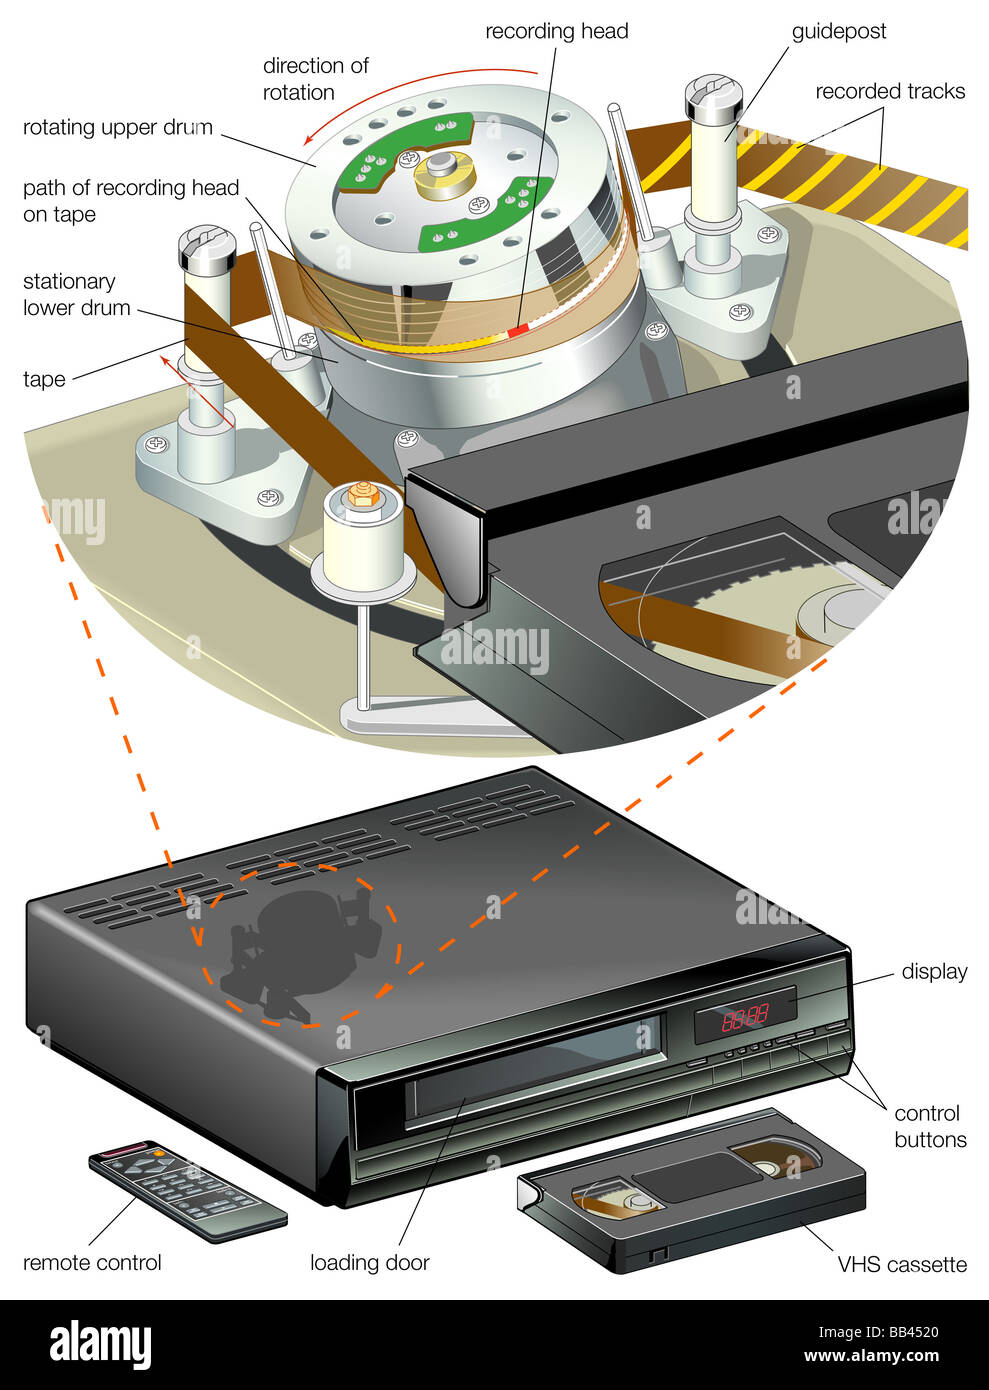 Detalle de los componentes internos de un magnetoscopio doméstico. Foto de stock